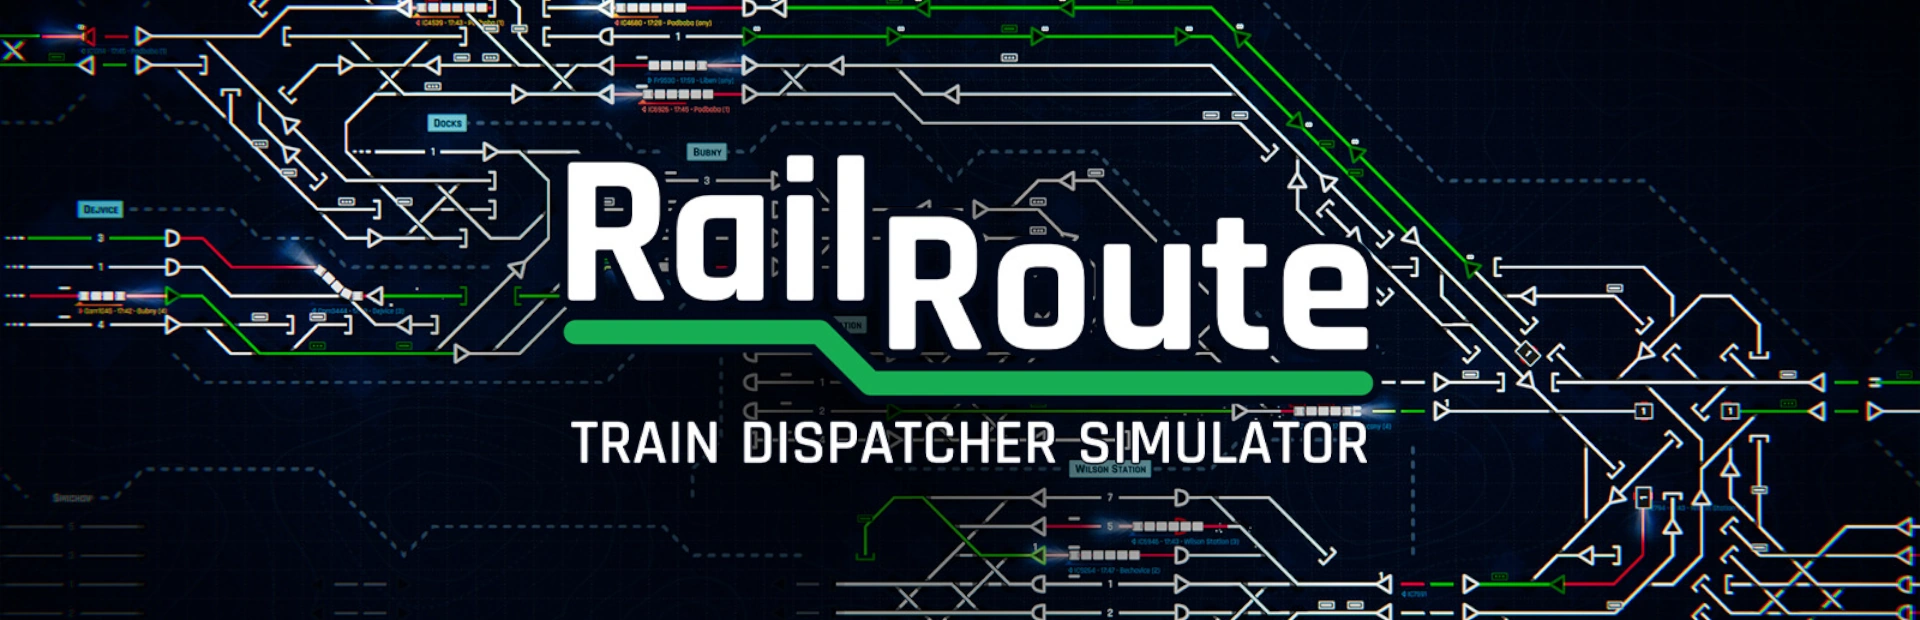 دانلود بازی Rail Route برای کامپیوتر | گیمباتو